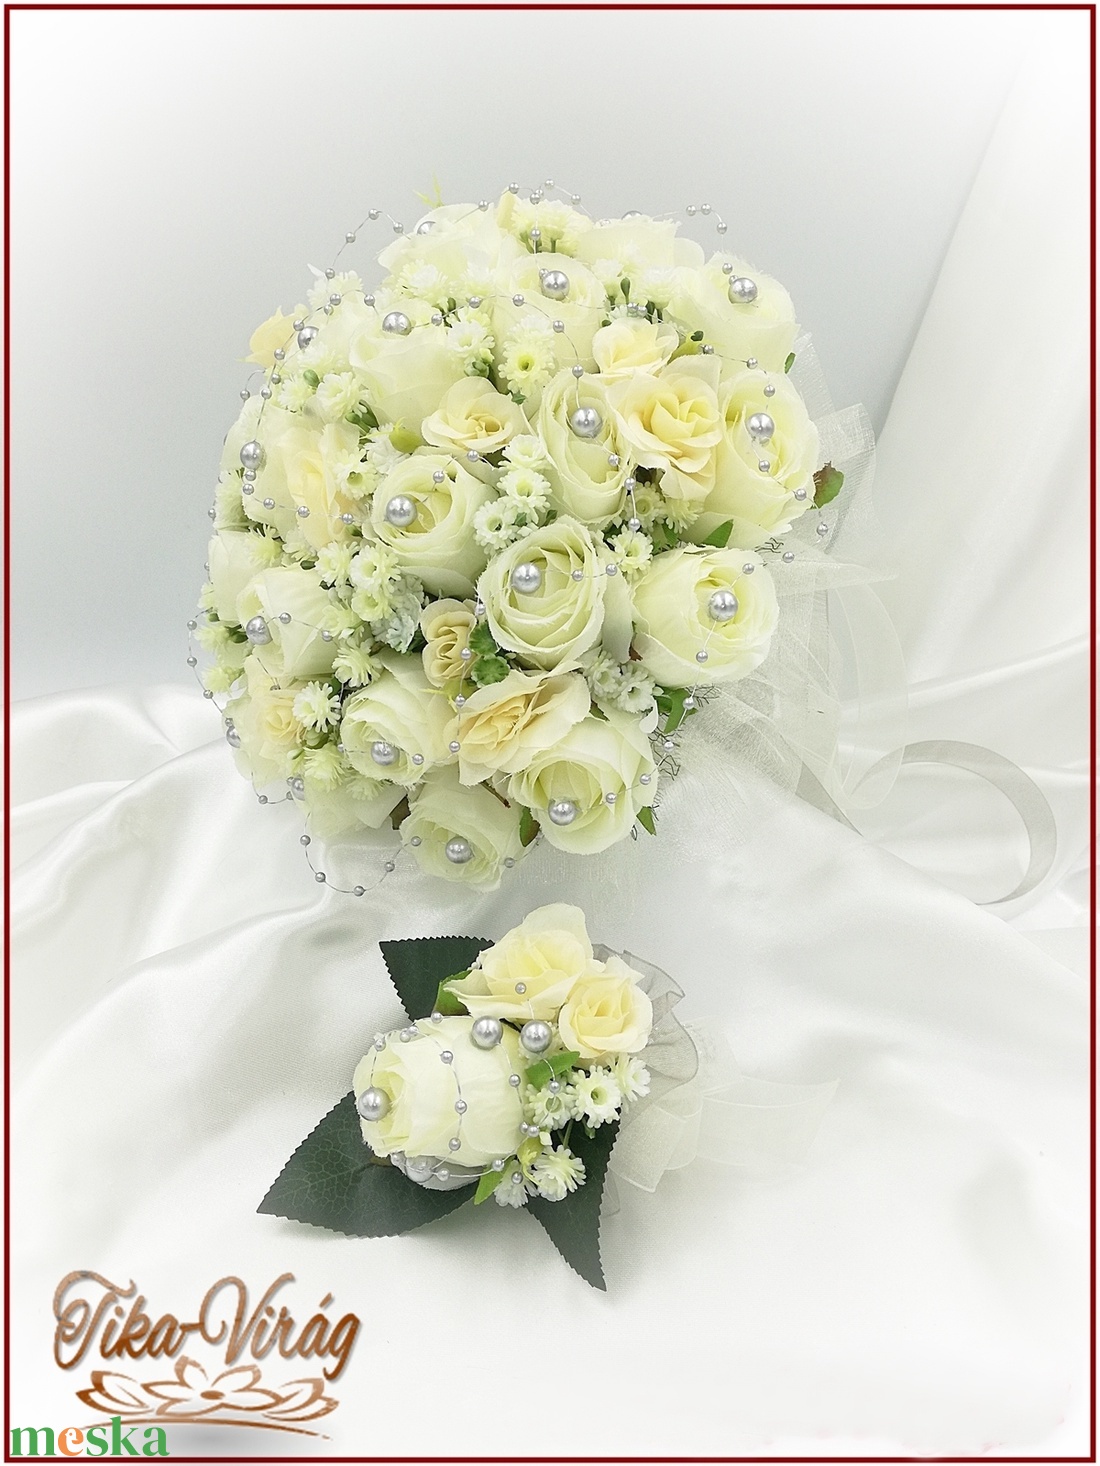 25 szálas ekrü rózsa örök-csokor ezüst díszítéssel + kitűzővel  - esküvő - menyasszonyi- és dobócsokor - Meska.hu